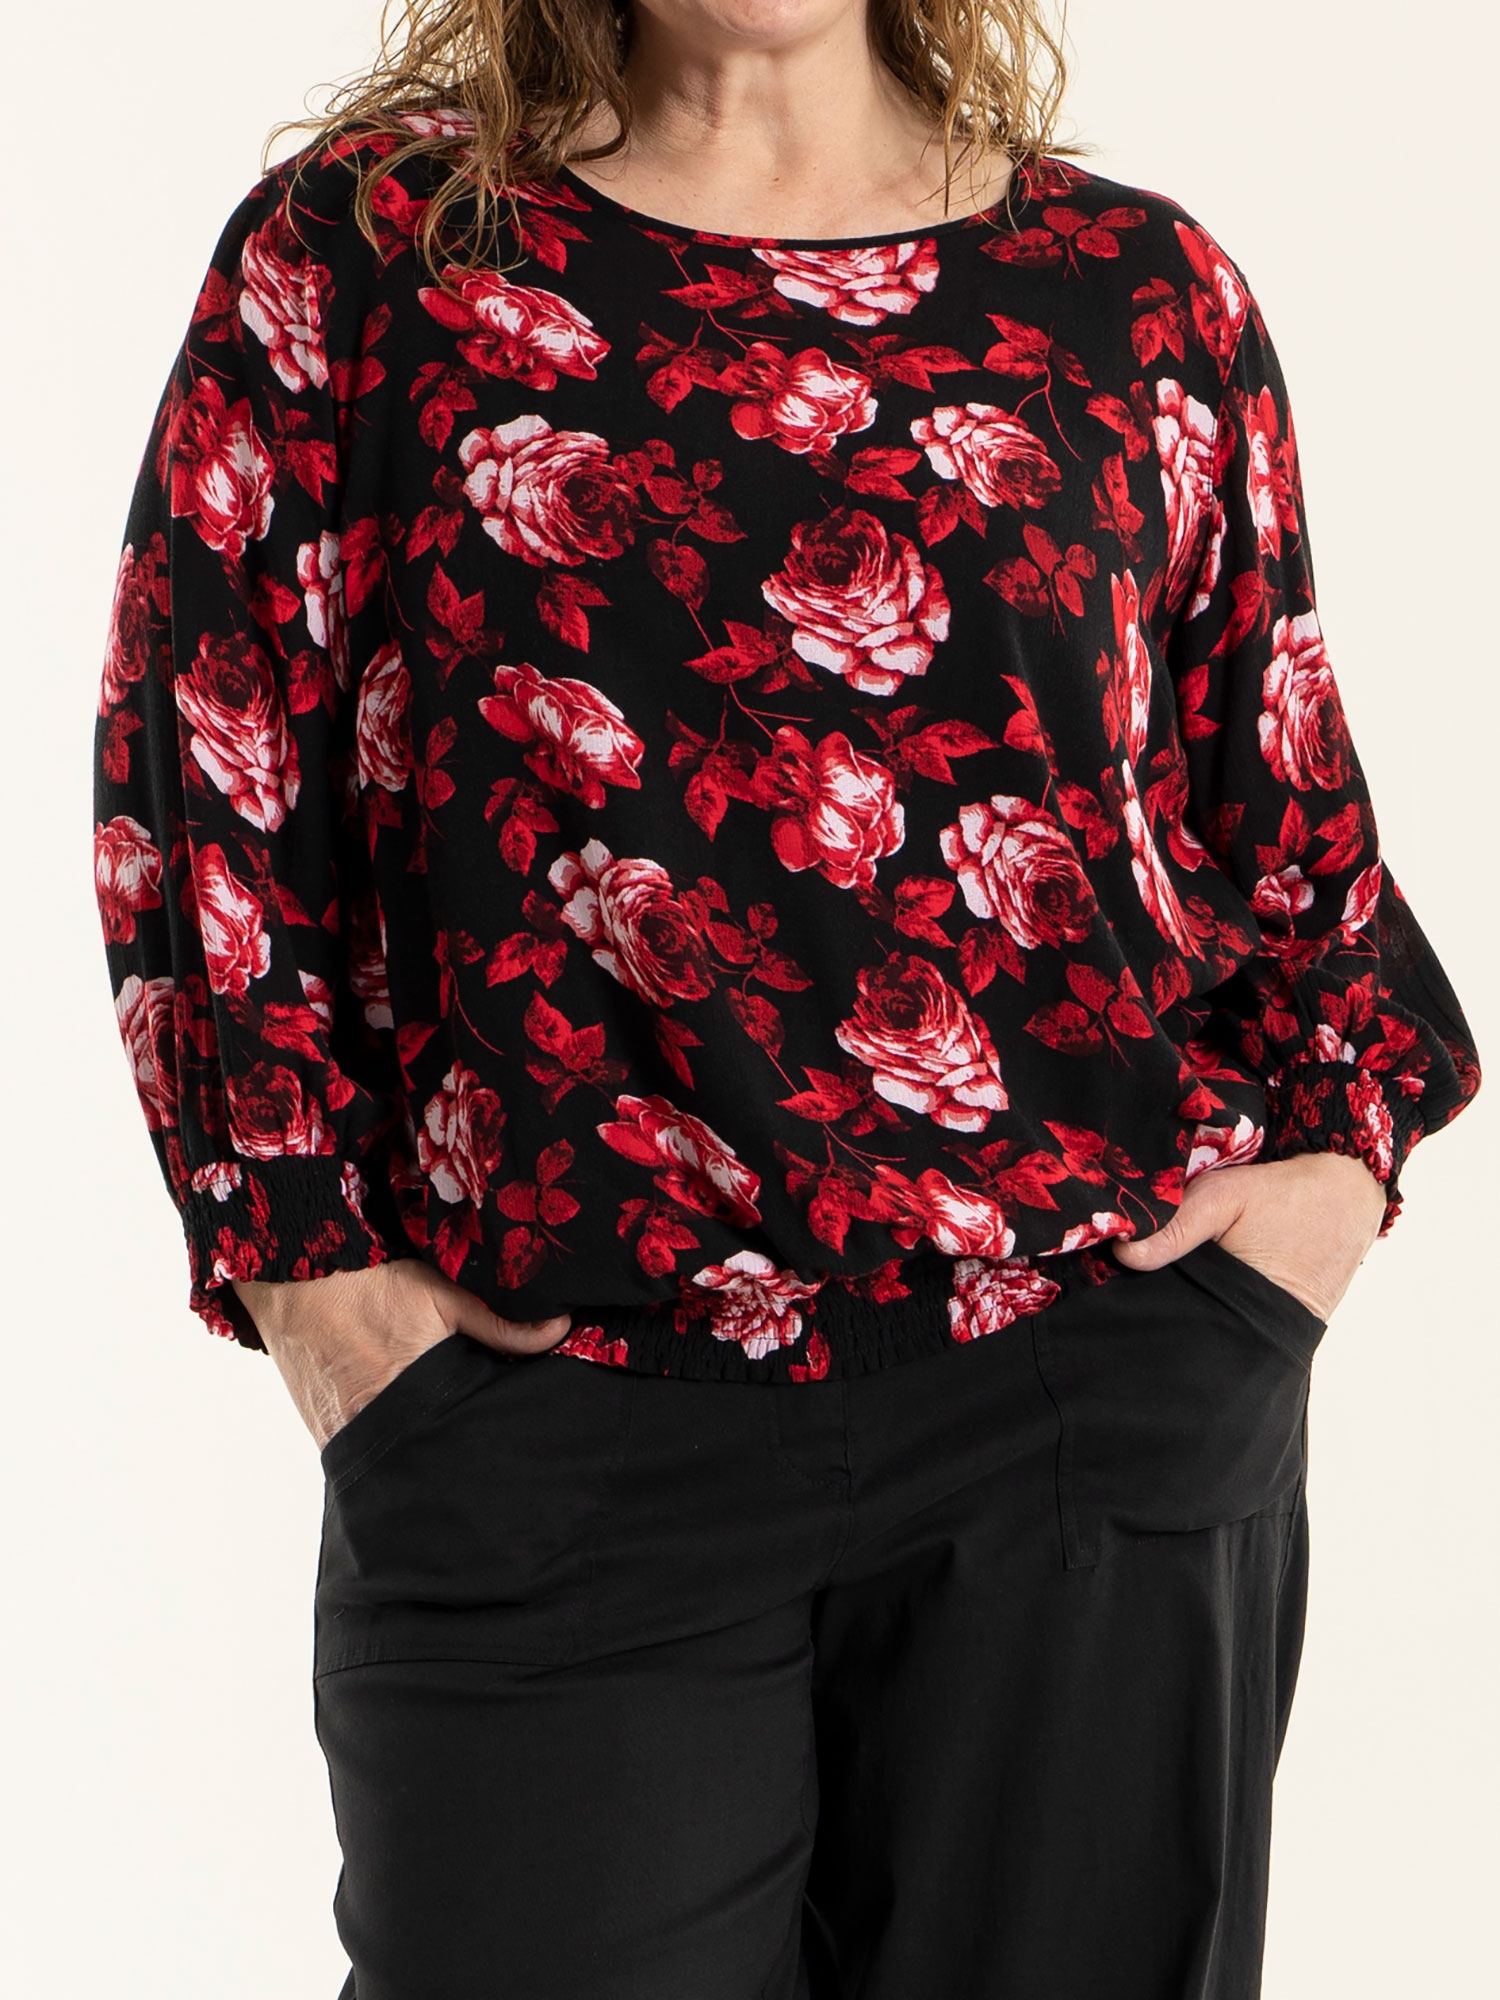 Fanny - Sort viskose bluse med flotte røde blomster fra Gozzip